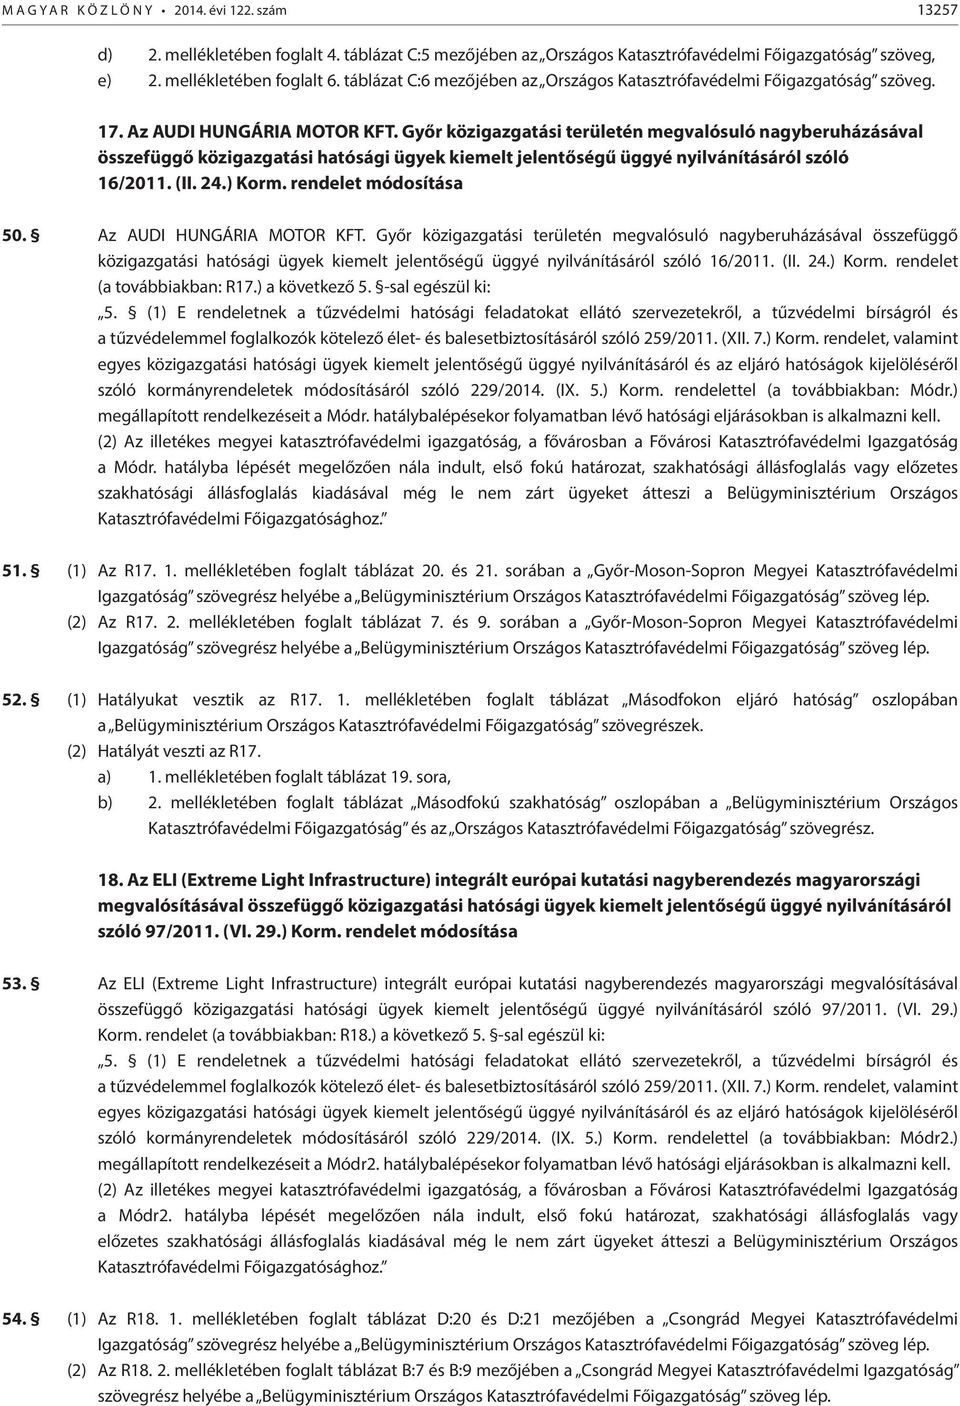 Győr közigazgatási területén megvalósuló nagyberuházásával összefüggő közigazgatási hatósági ügyek kiemelt jelentőségű üggyé nyilvánításáról szóló 16/2011. (II. 24.) Korm. rendelet módosítása 50.